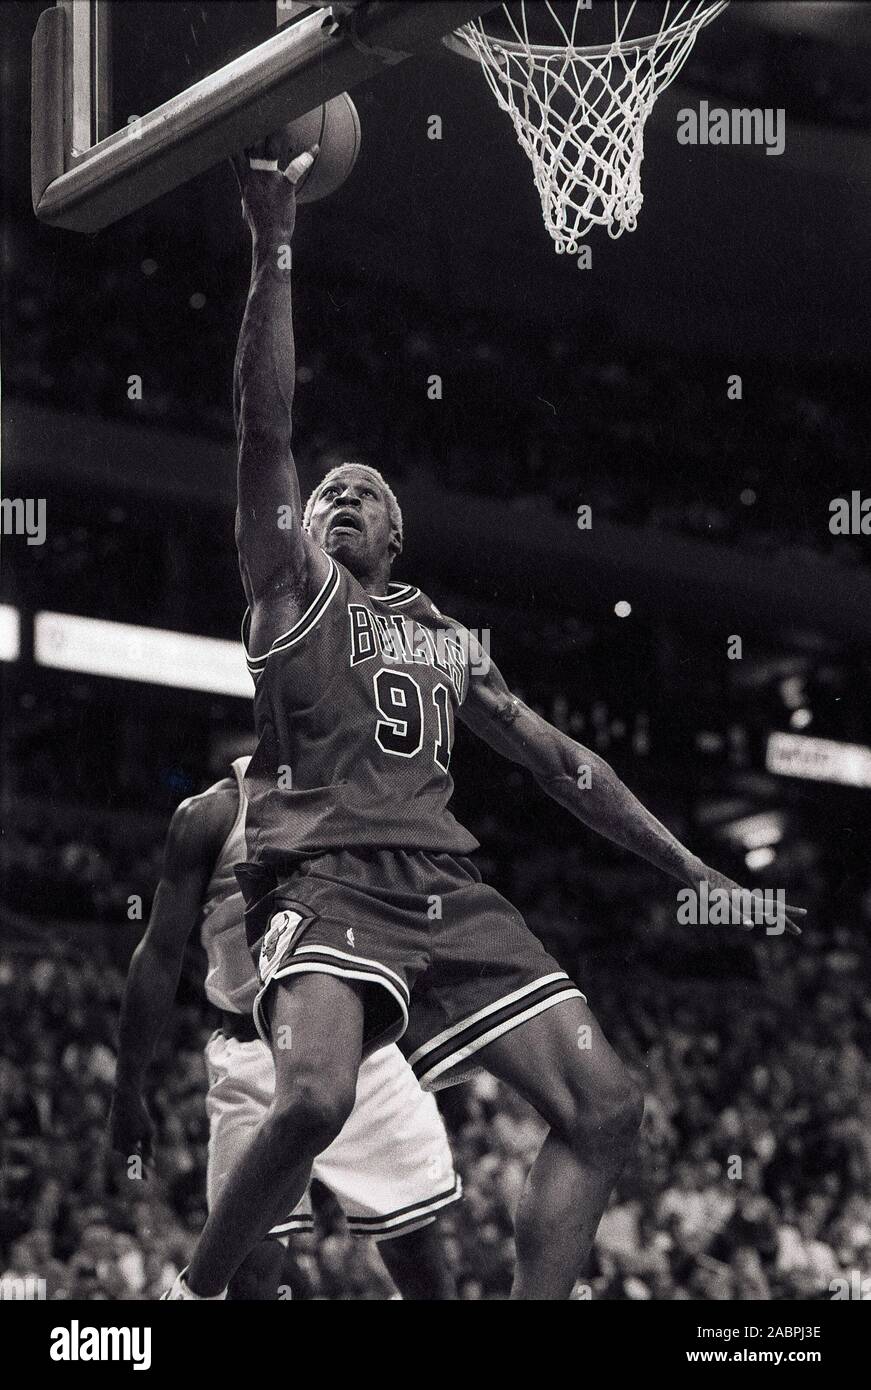 Chicago Bulls Dennis Rodman prallt der Ball vom Boston Celtics während Basketball spiel action im Fleet Center in Boston, Ma USA 1997-1998 Saison Foto von Bill belknap Stockfoto